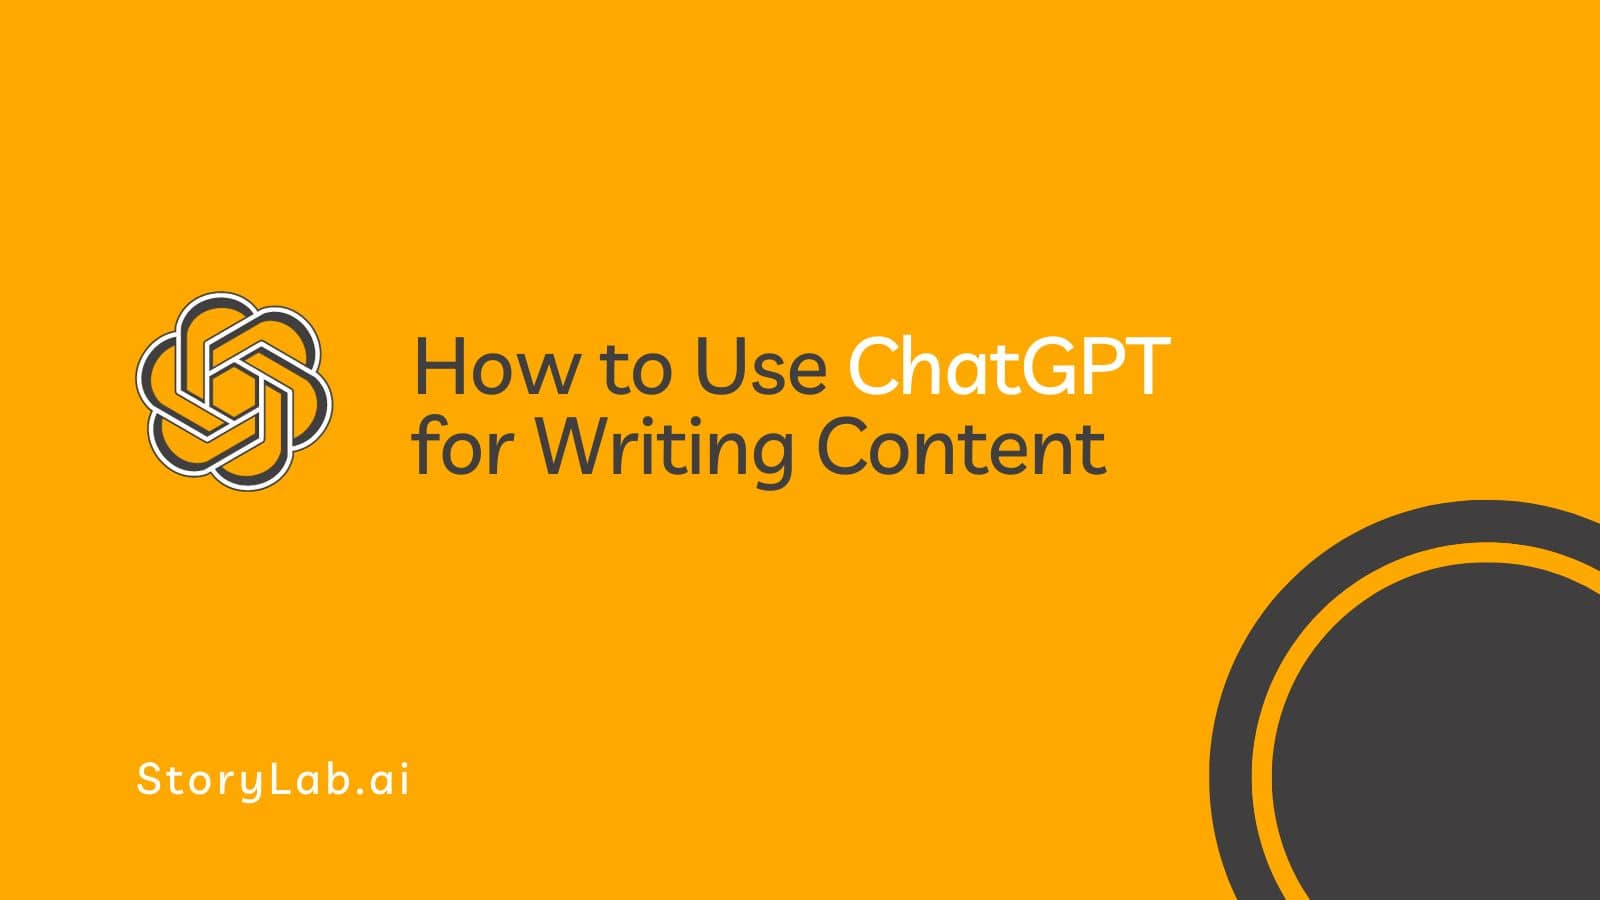 Instrucciones de uso ChatGPT para escribir contenido